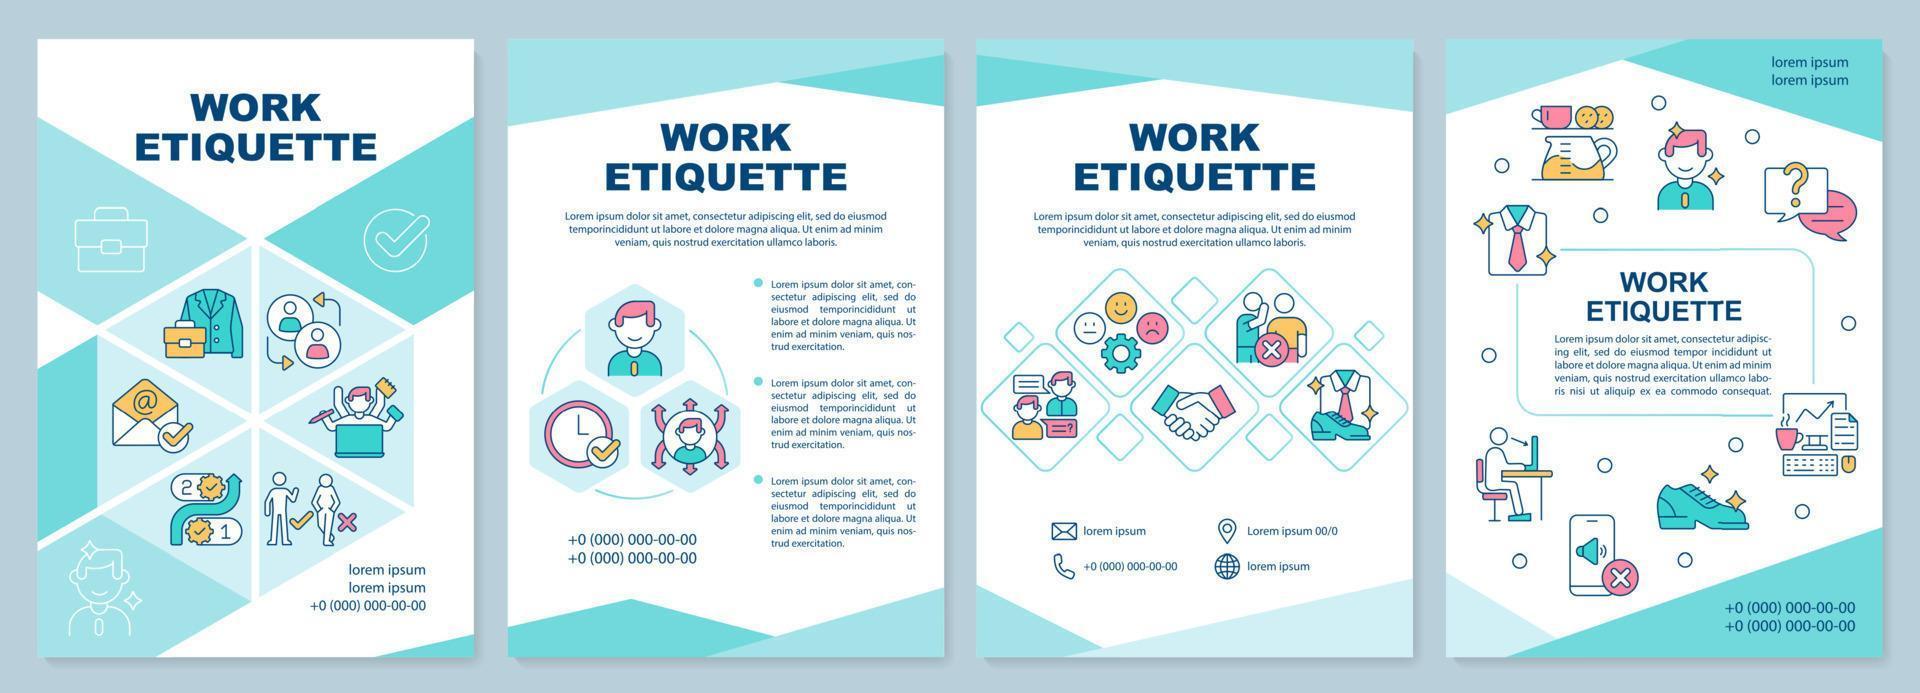 modèle de brochure d'étiquette de travail. code d'éthique du travail. conception de dépliant avec des icônes linéaires. 4 mises en page vectorielles pour la présentation, les rapports annuels. vecteur